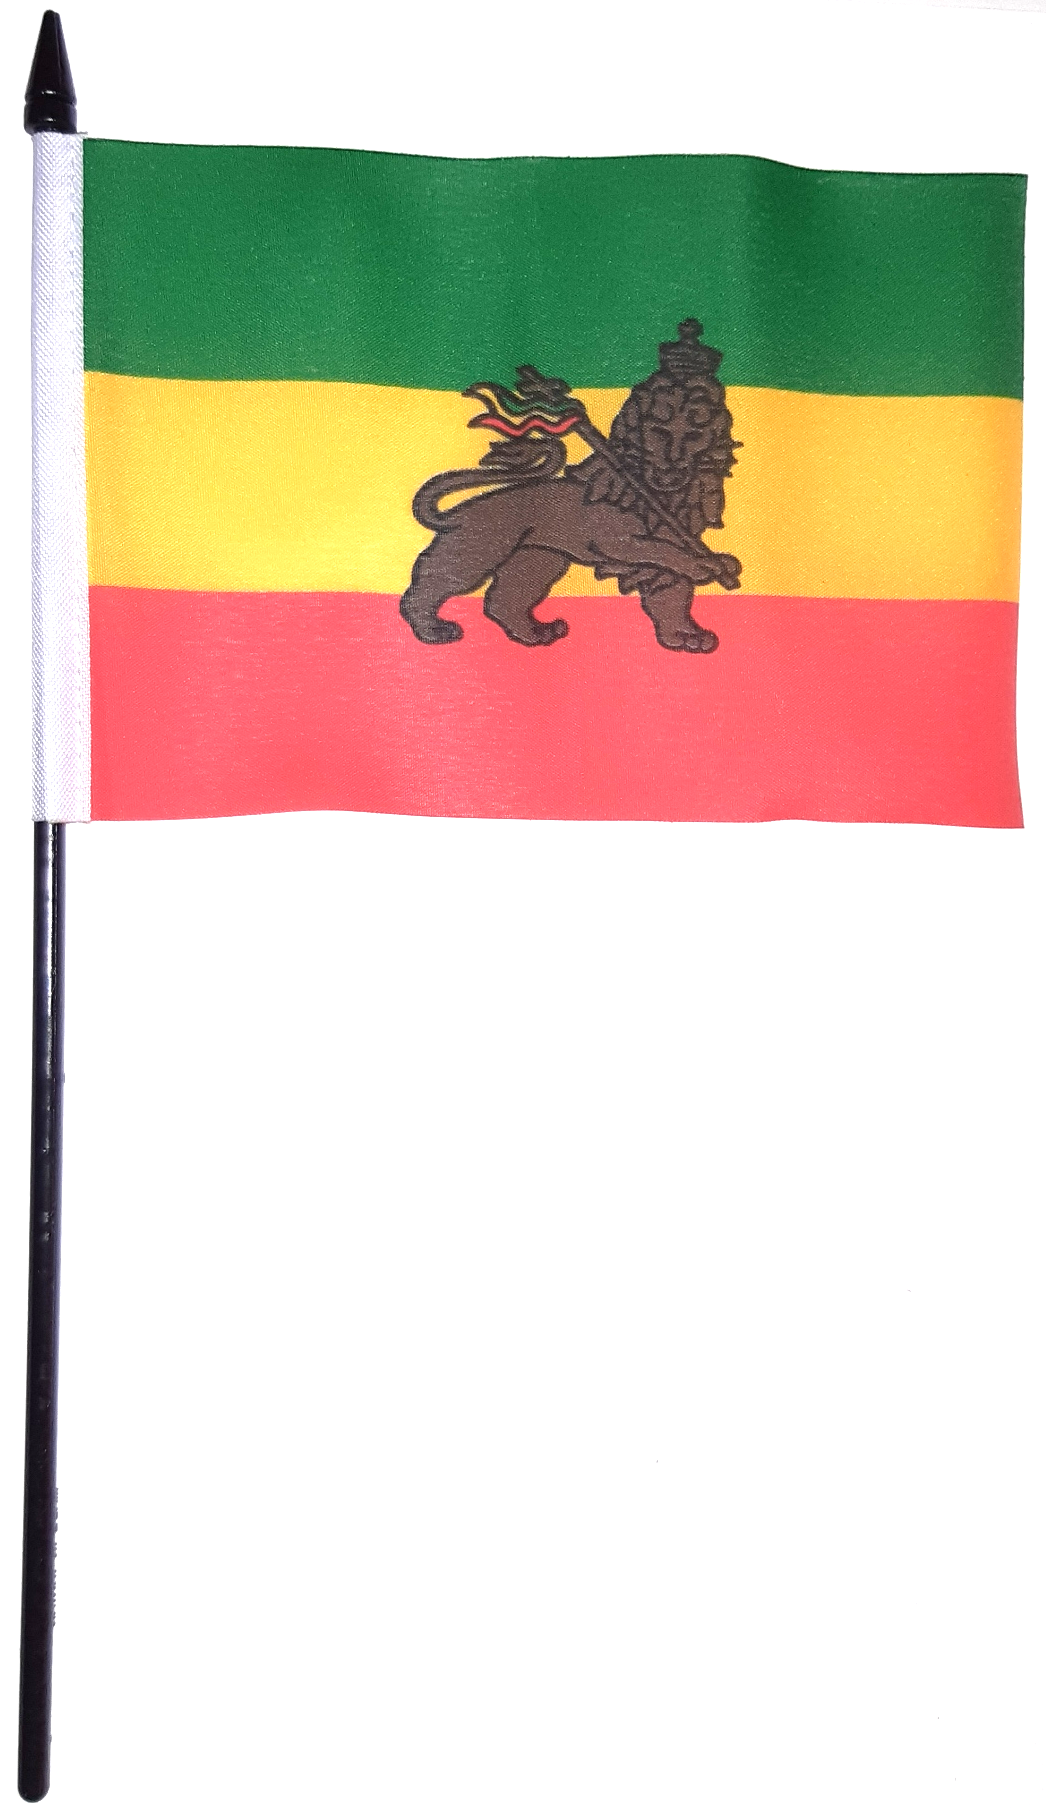 ETIOPIEN HANDFLAGGA LEJON 15X10CM